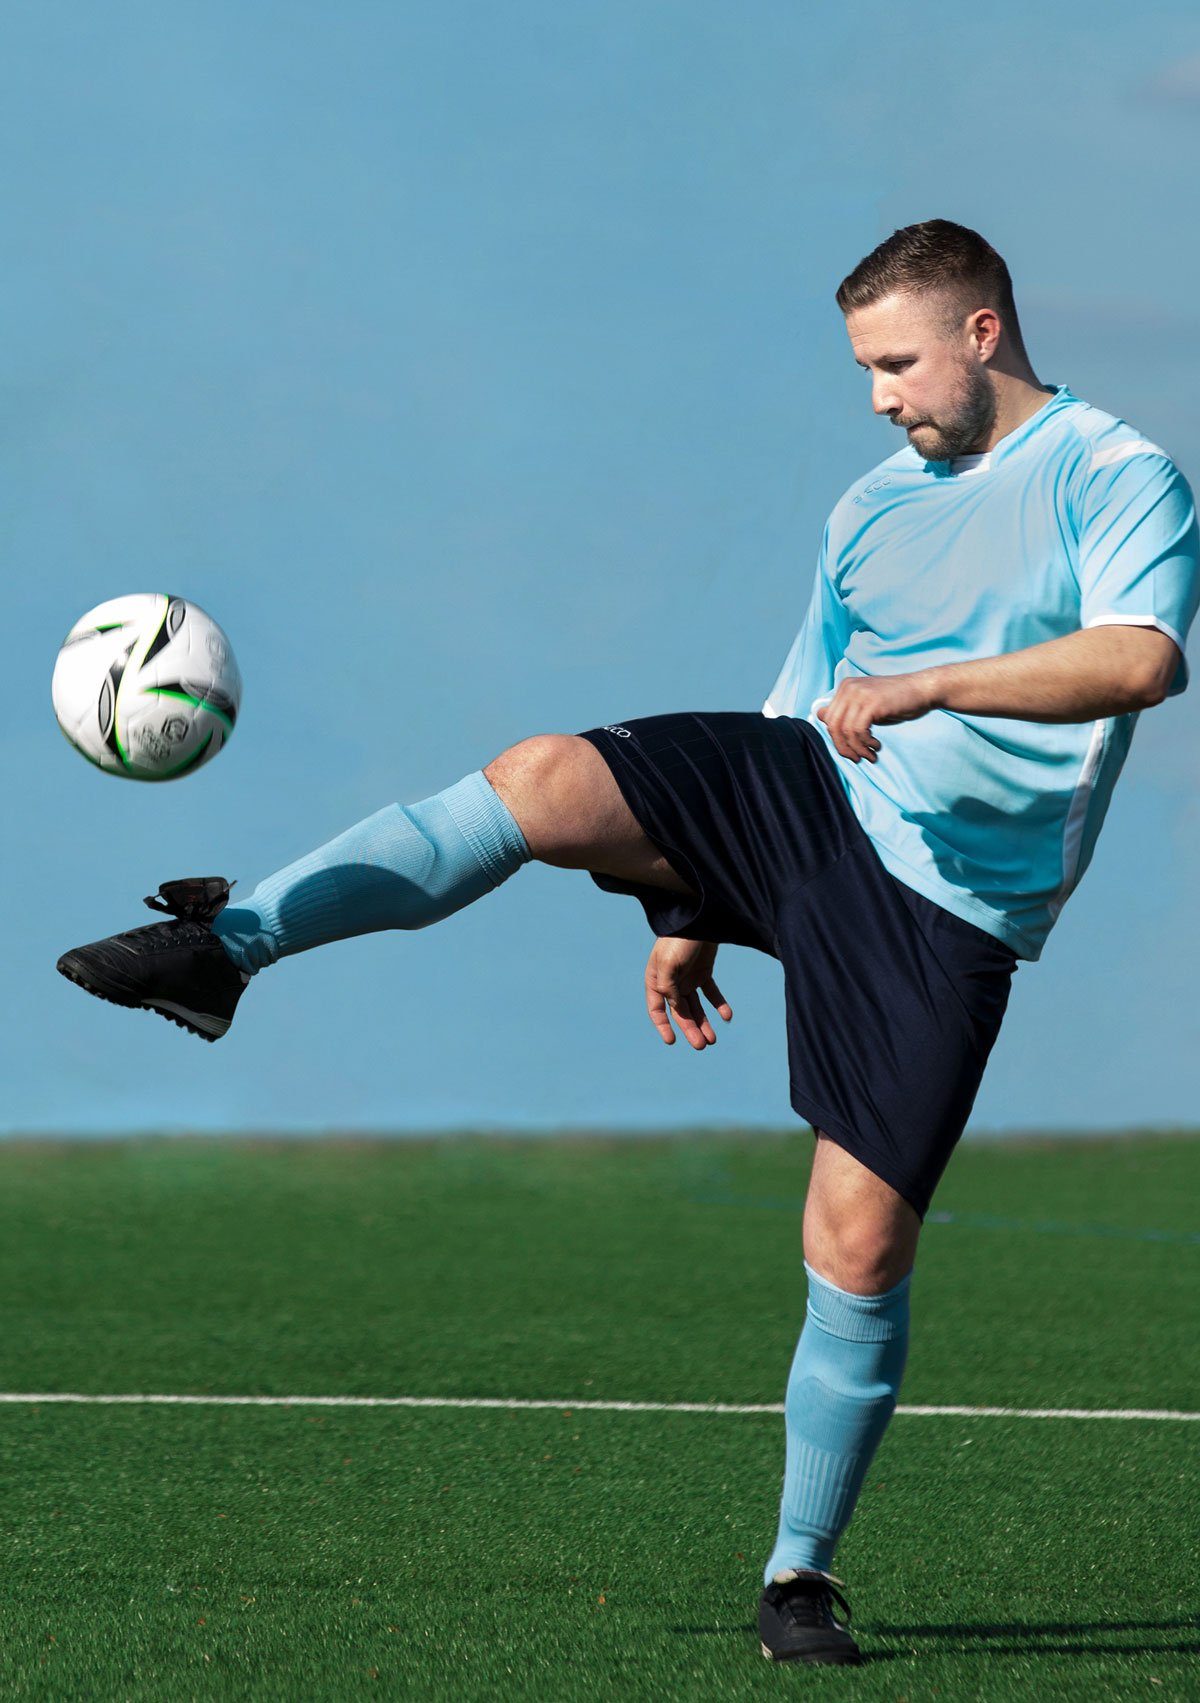 Levante zweifarbig gelb/blau Trikot kurzarm Fußball Fußballtrikot Fußballtrikot Geco Sportswear seitliche Mesheinsätze